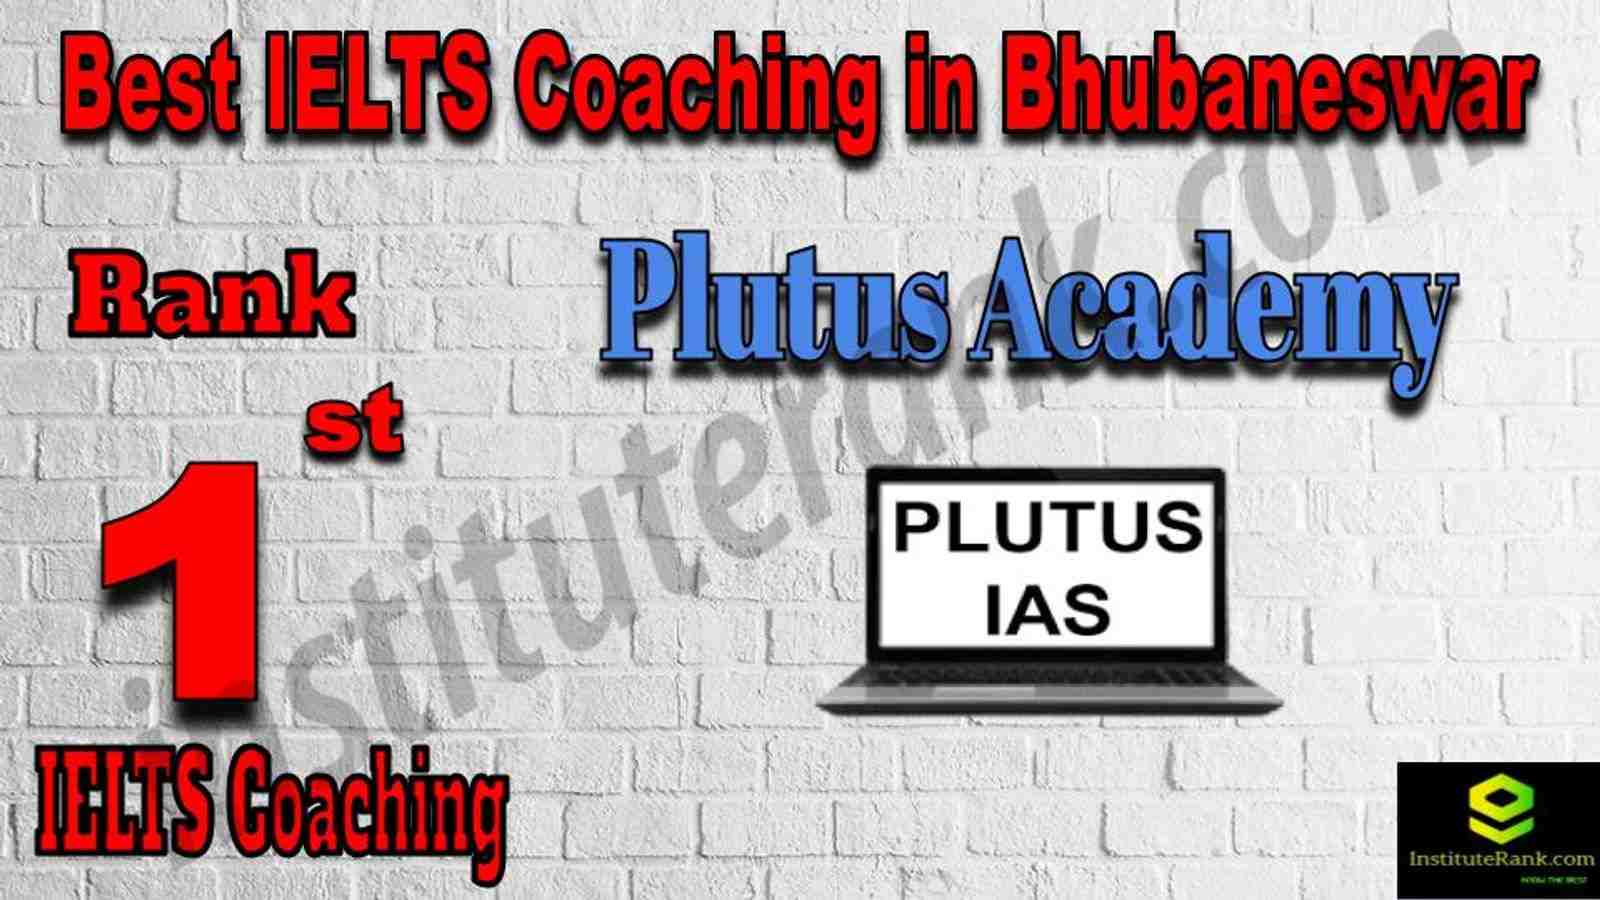 1st Best IELTS Coaching in Bhubaneswar